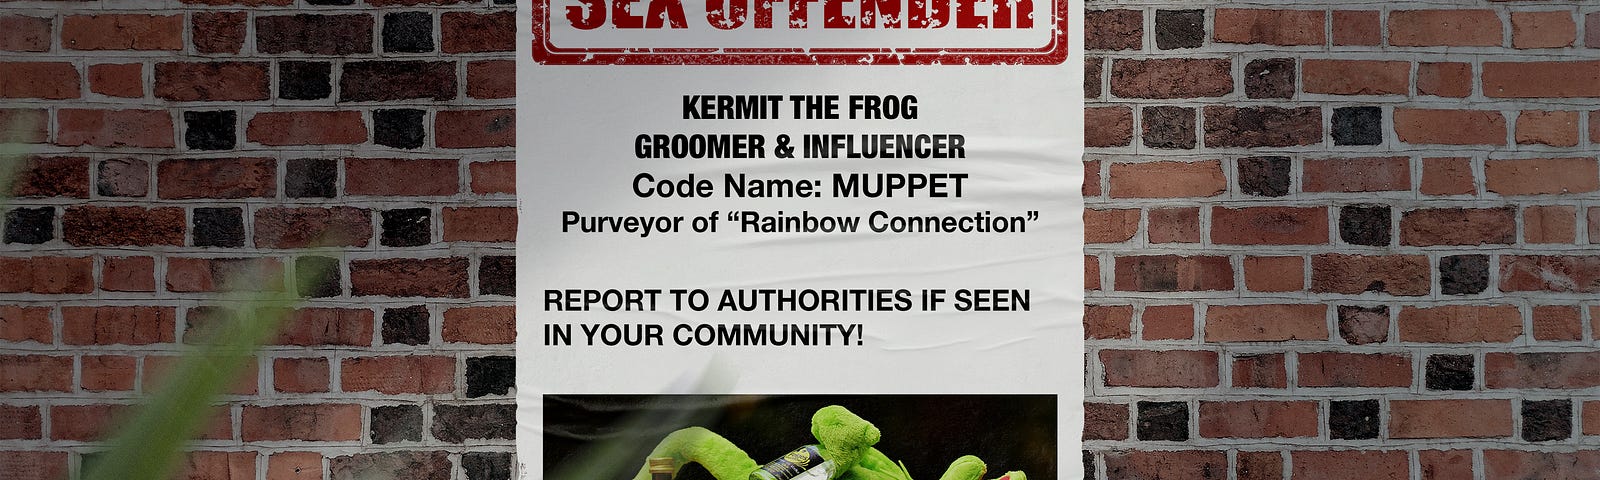 Drunk Kermit on sex offender poster